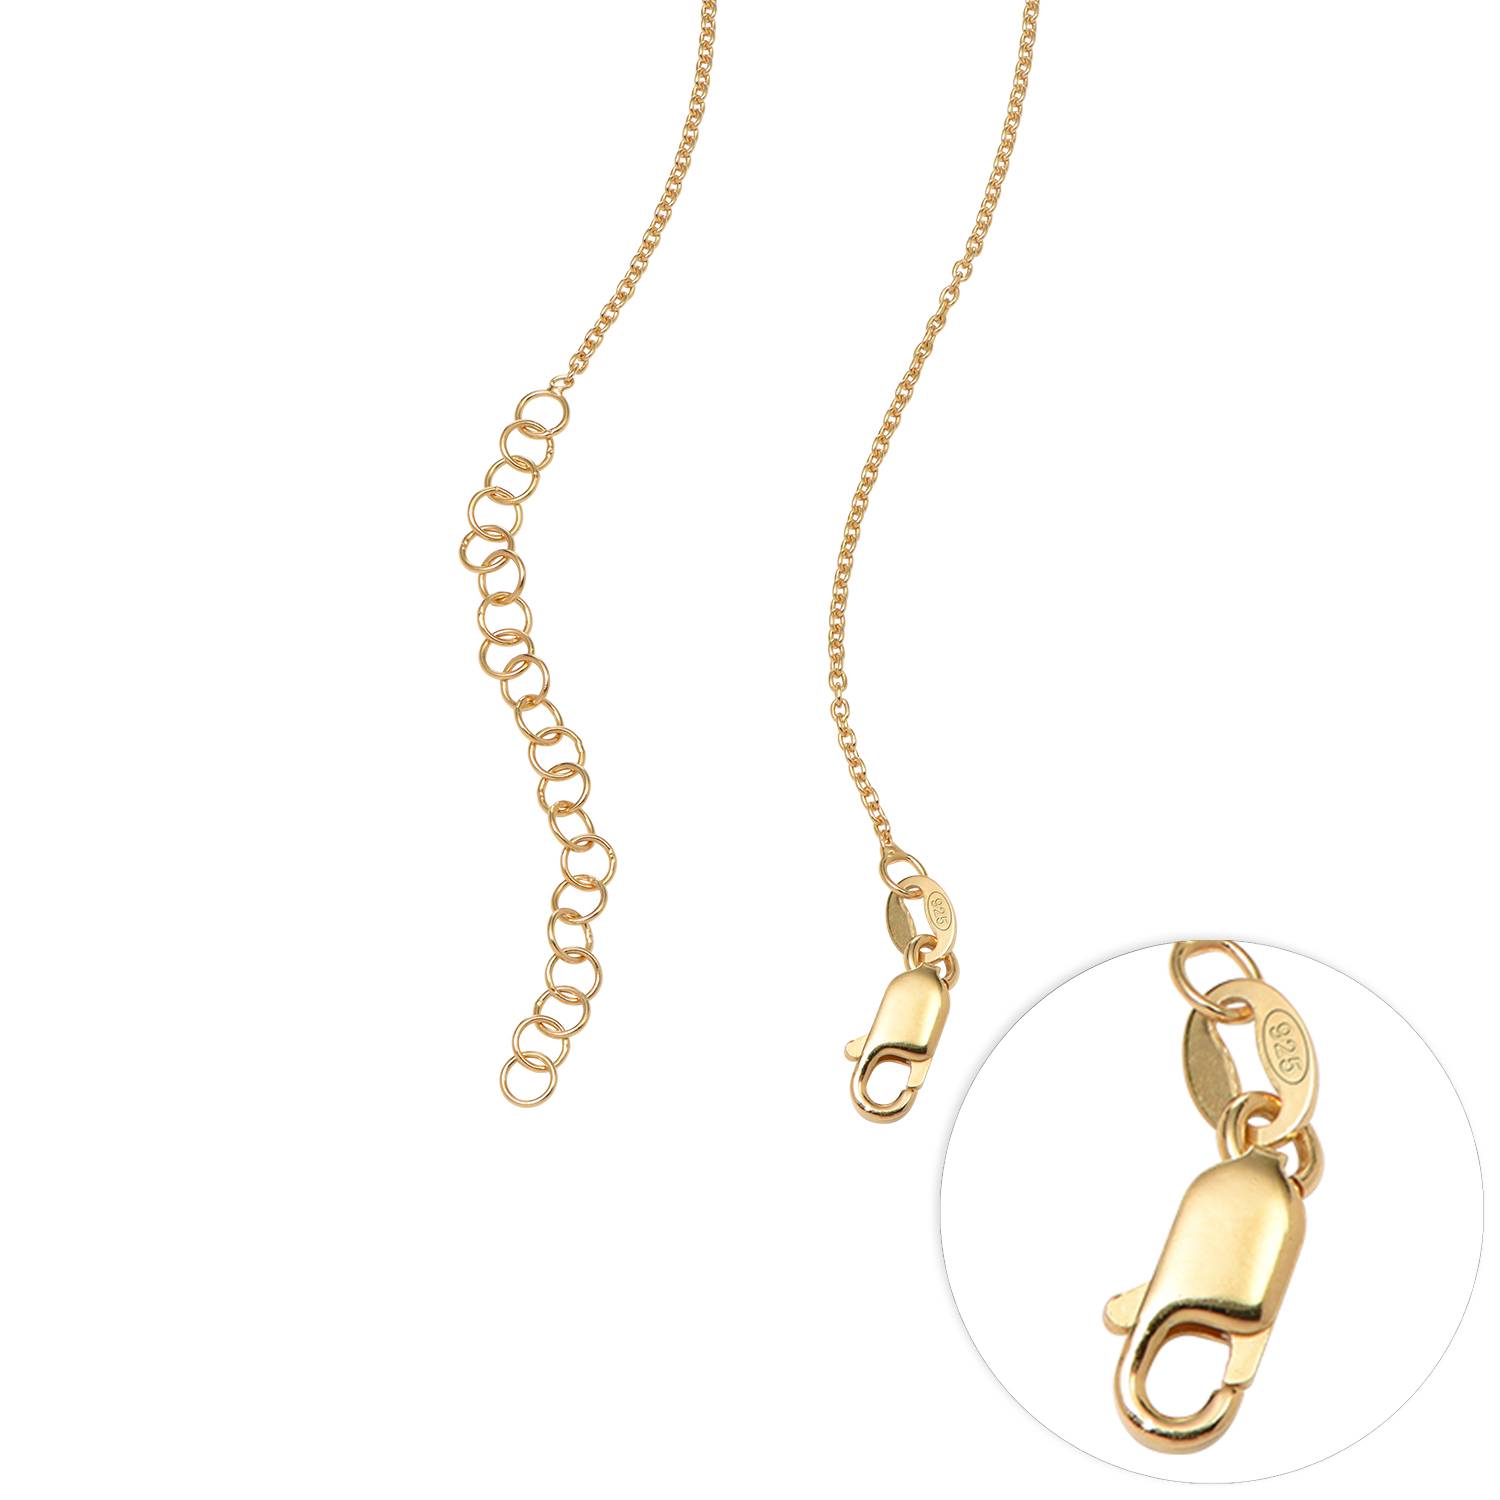 Ella Geburtsstein Herz Halskette mit Namen - 750er vergoldetes Silber-2 Produktfoto